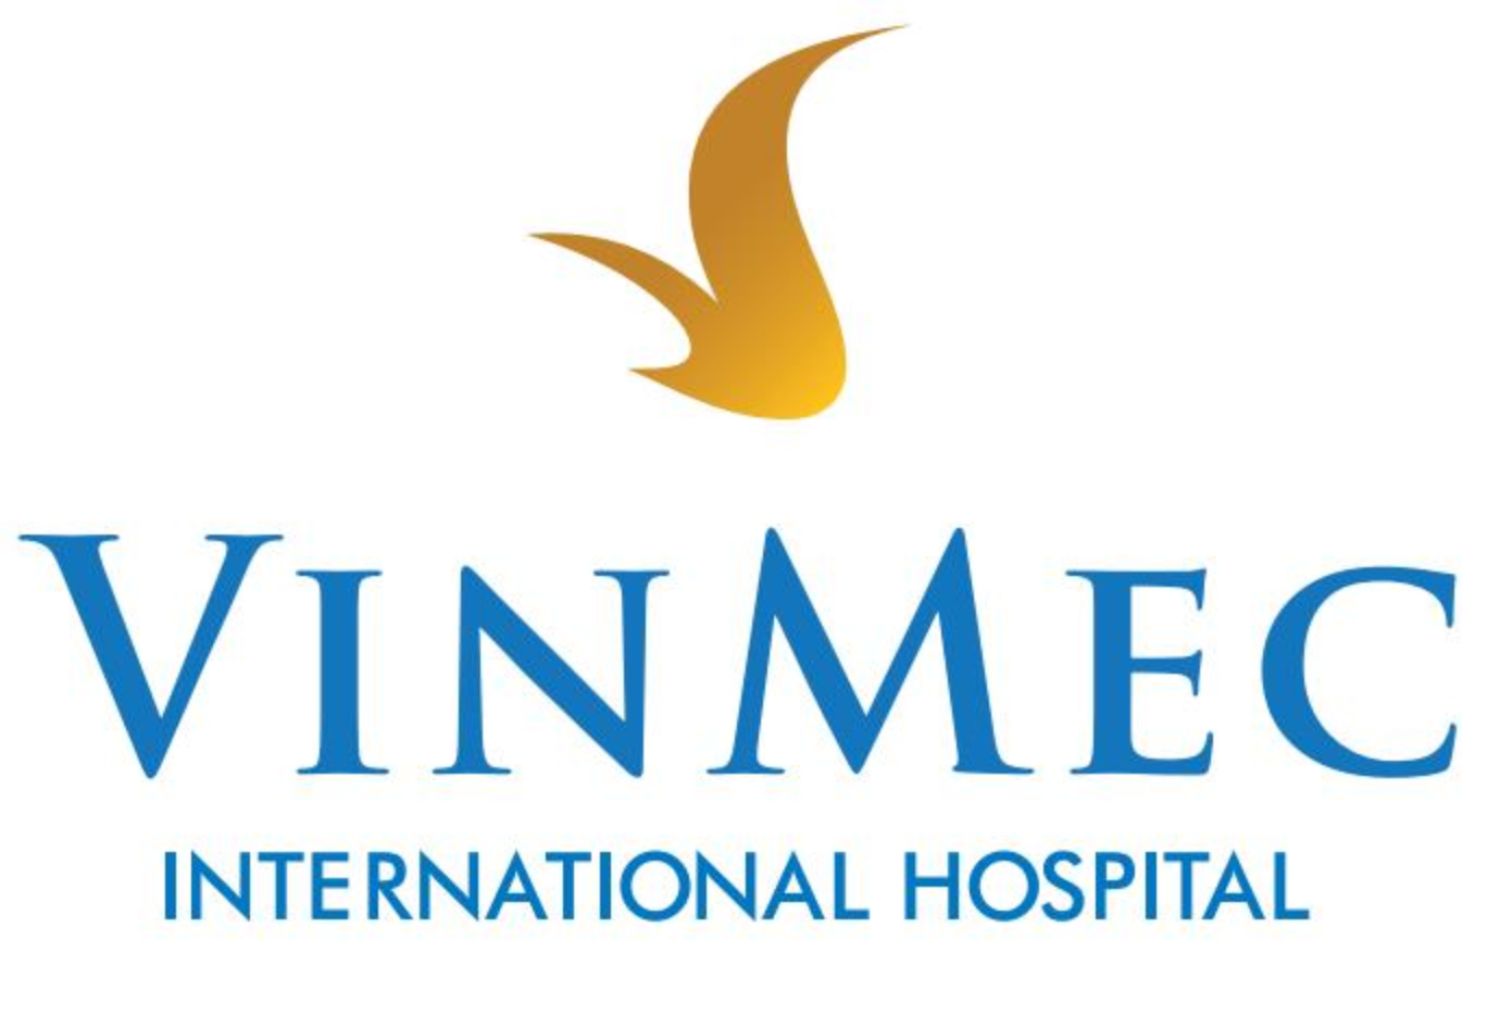 Bệnh viện Vinmec